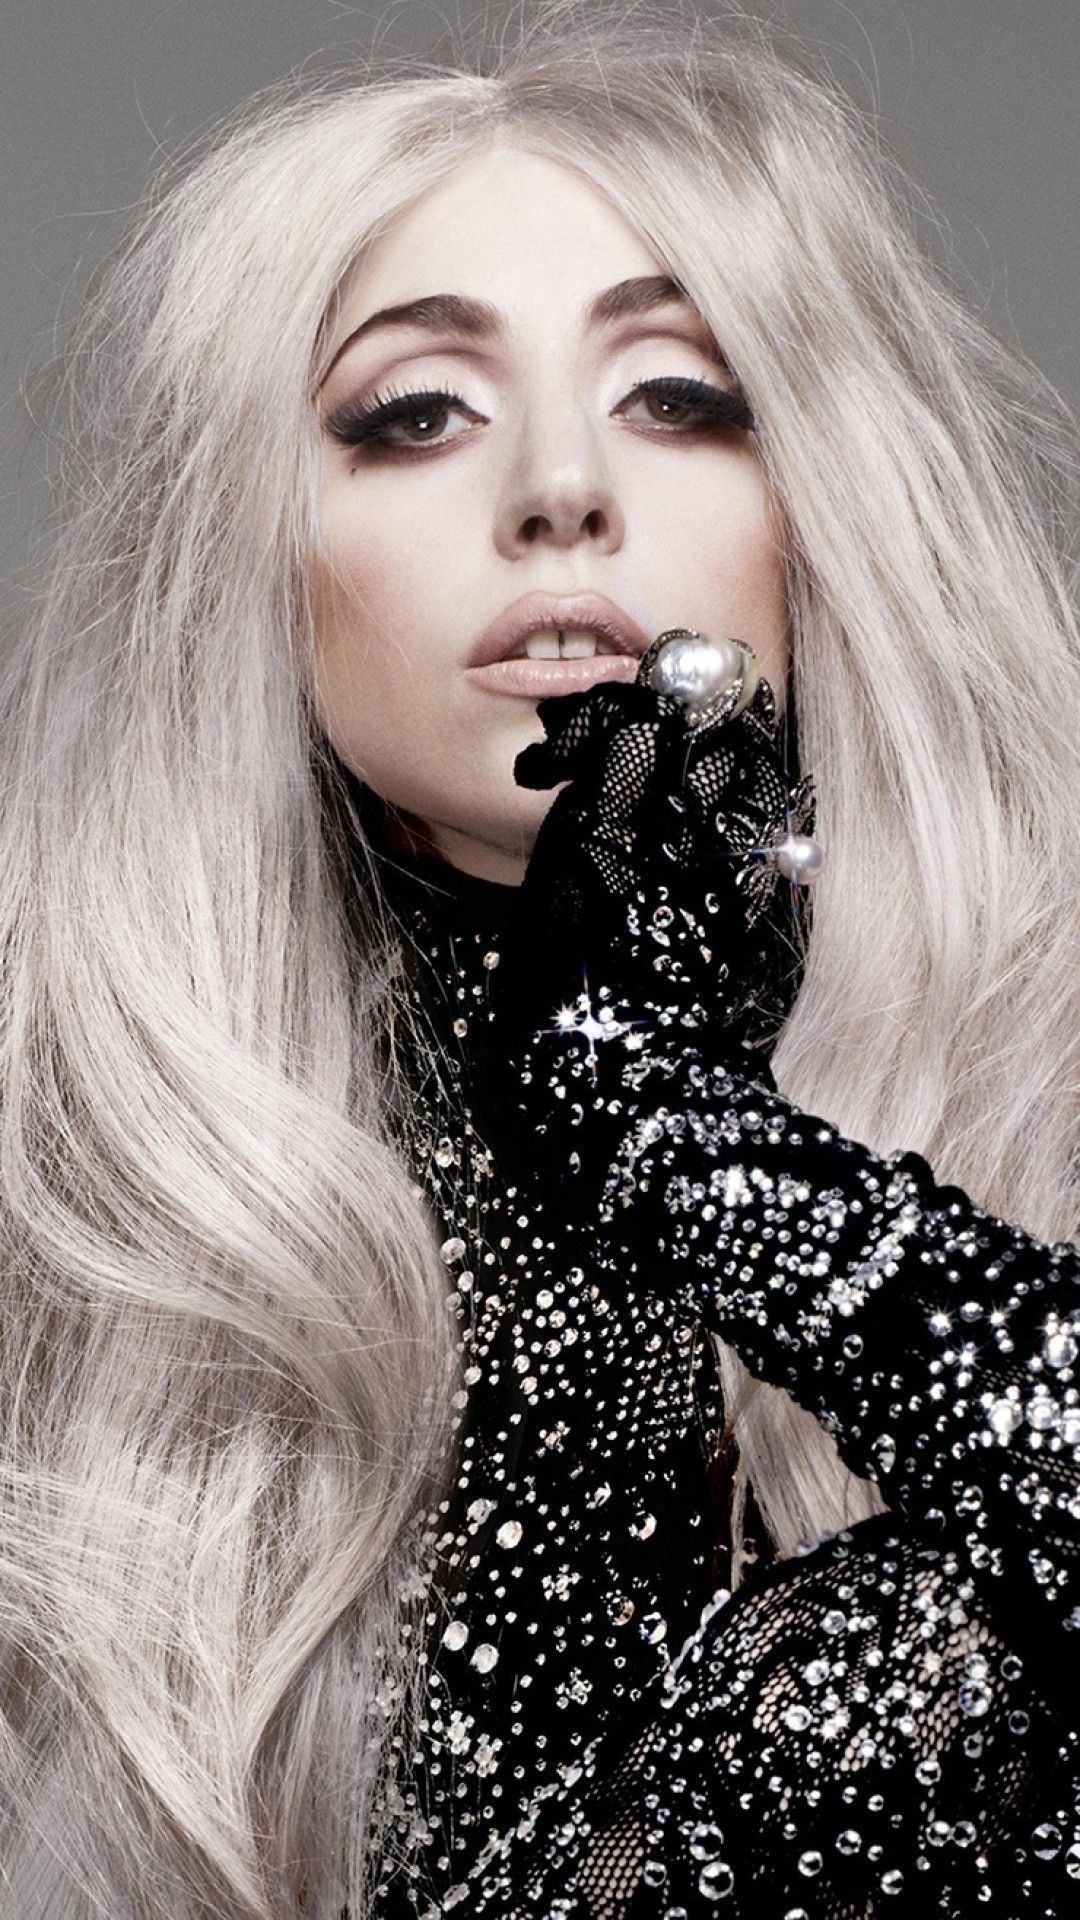 1080x1920 Wallpaper Phone Lady Gaga Full Hd Lady Gaga Lady Gaga